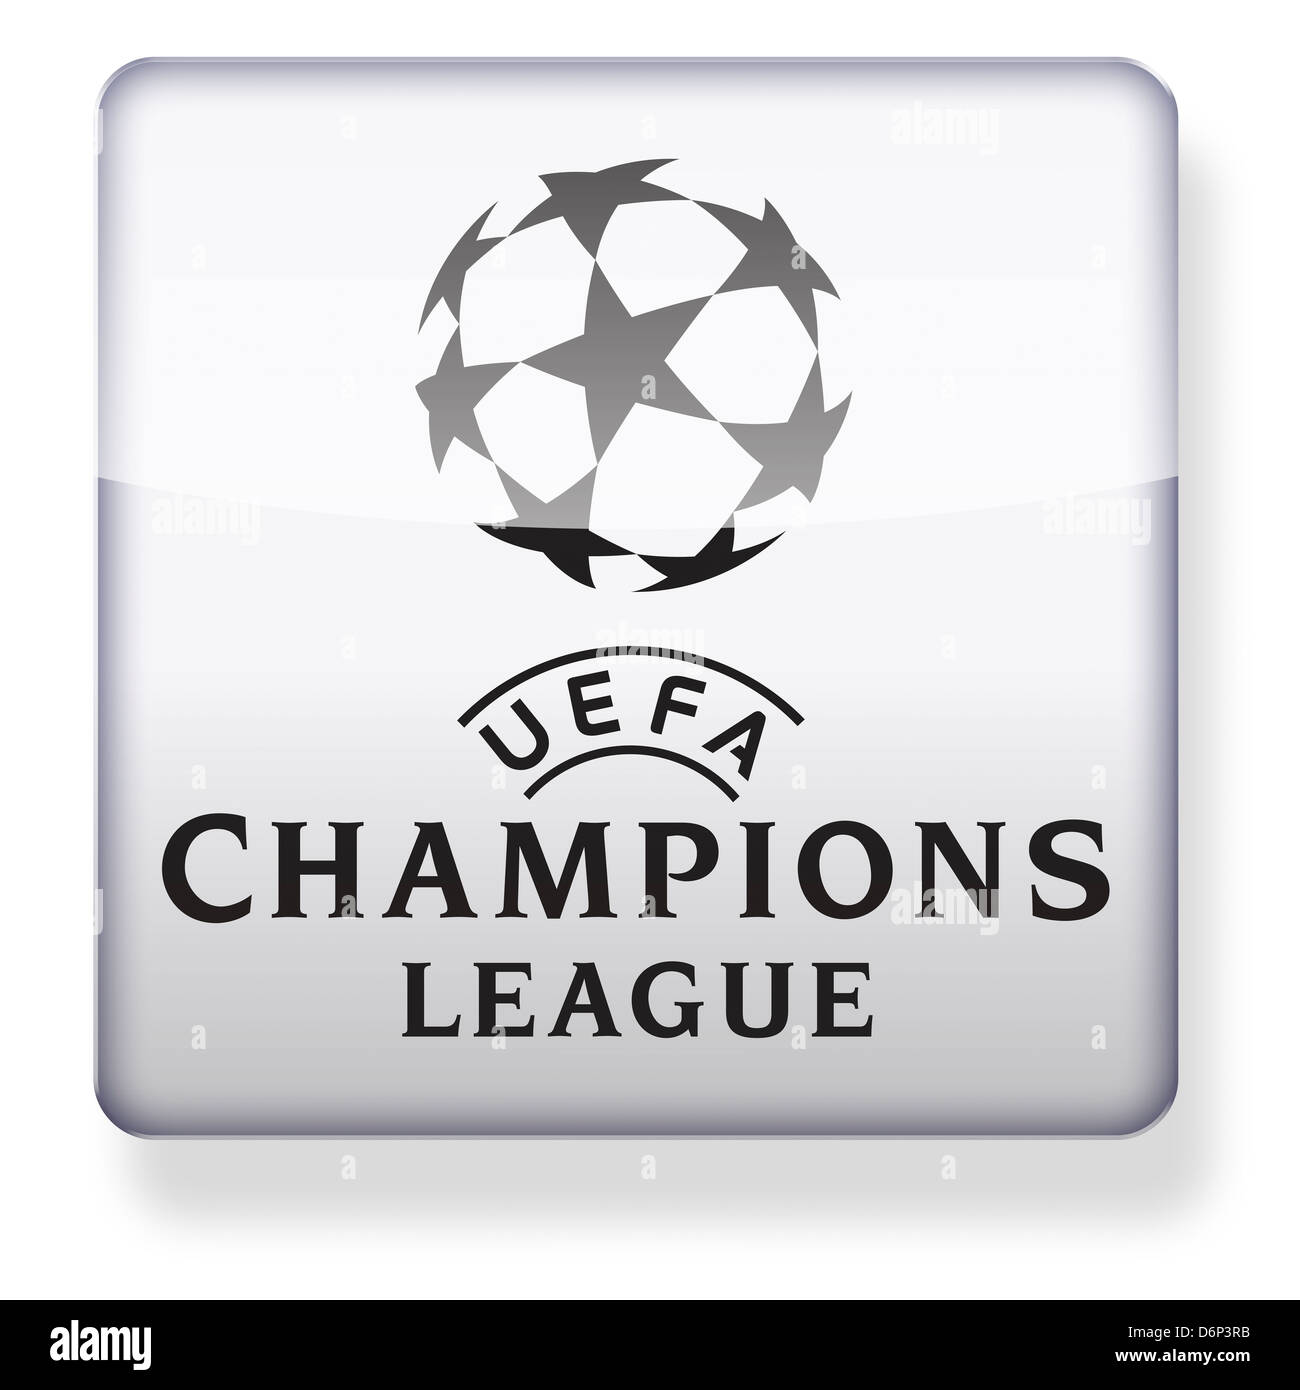 UEFA Champions League logo come l'icona di un'app. Percorso di clipping incluso. Foto Stock